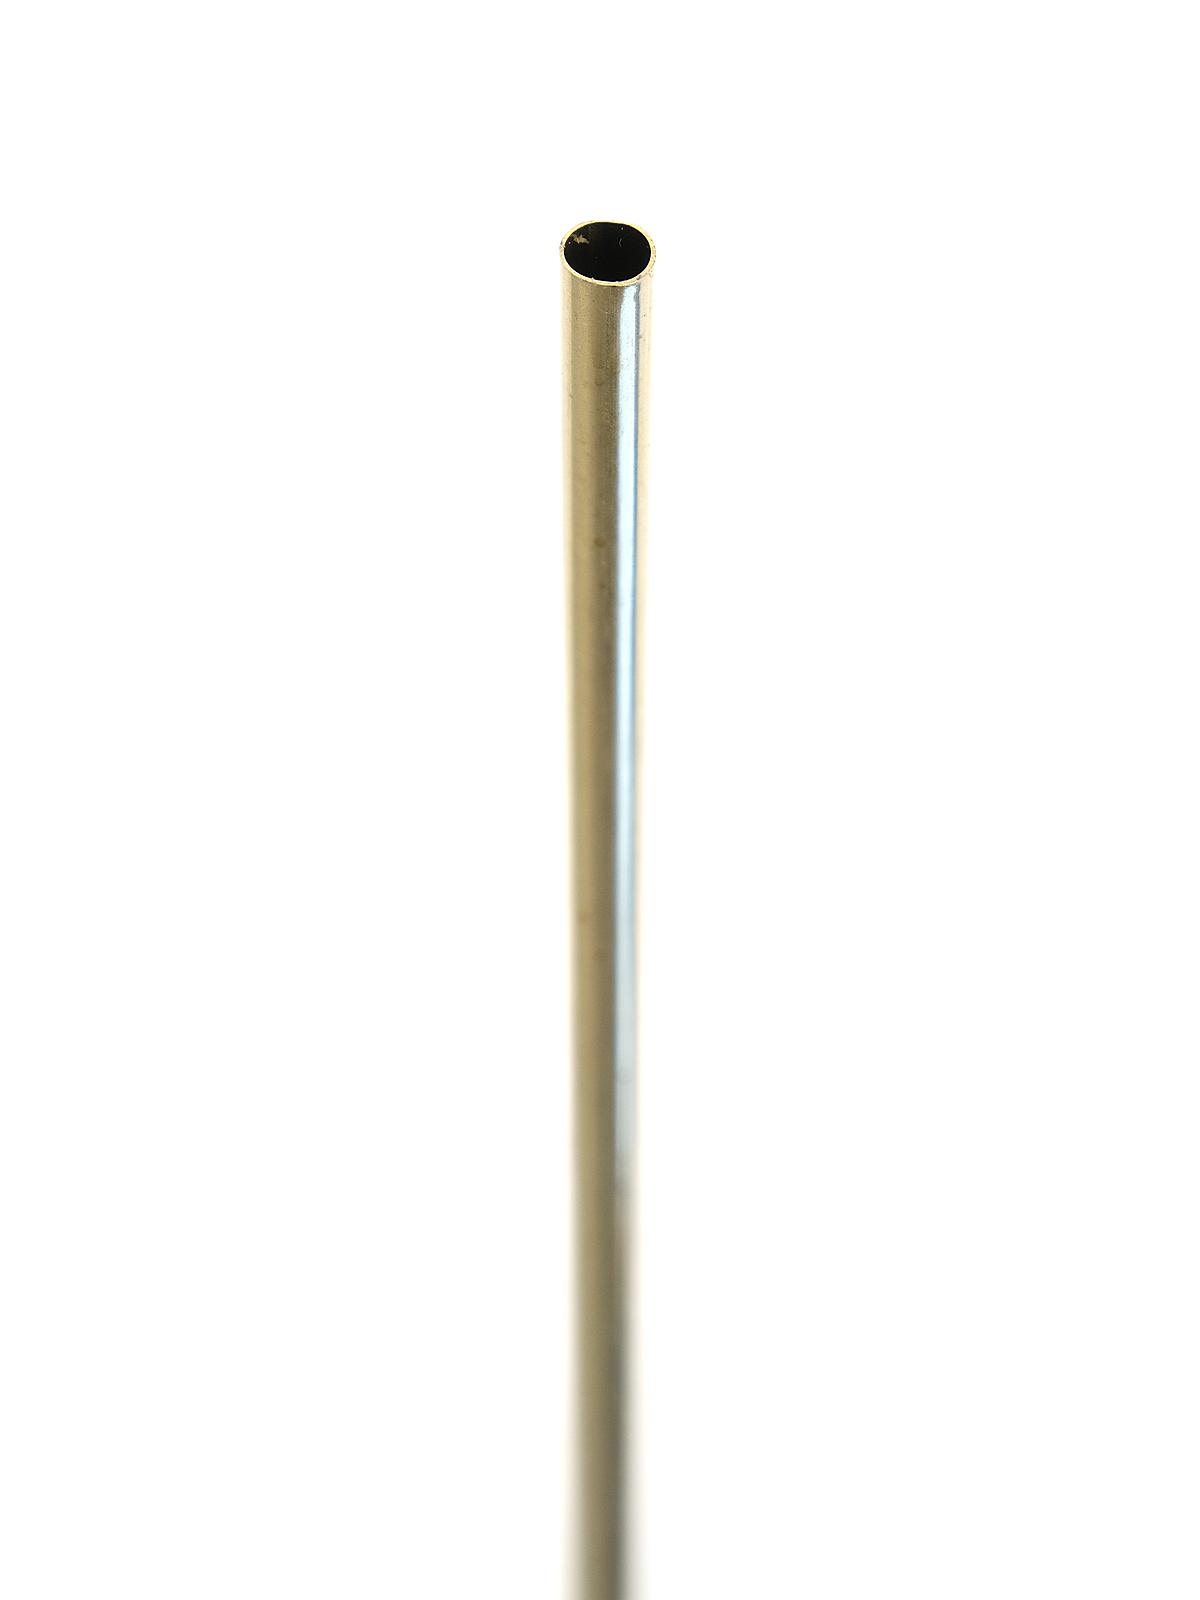 Metal Tubing Brass 5 16 In. X .014 In. X 36 In. Tubing